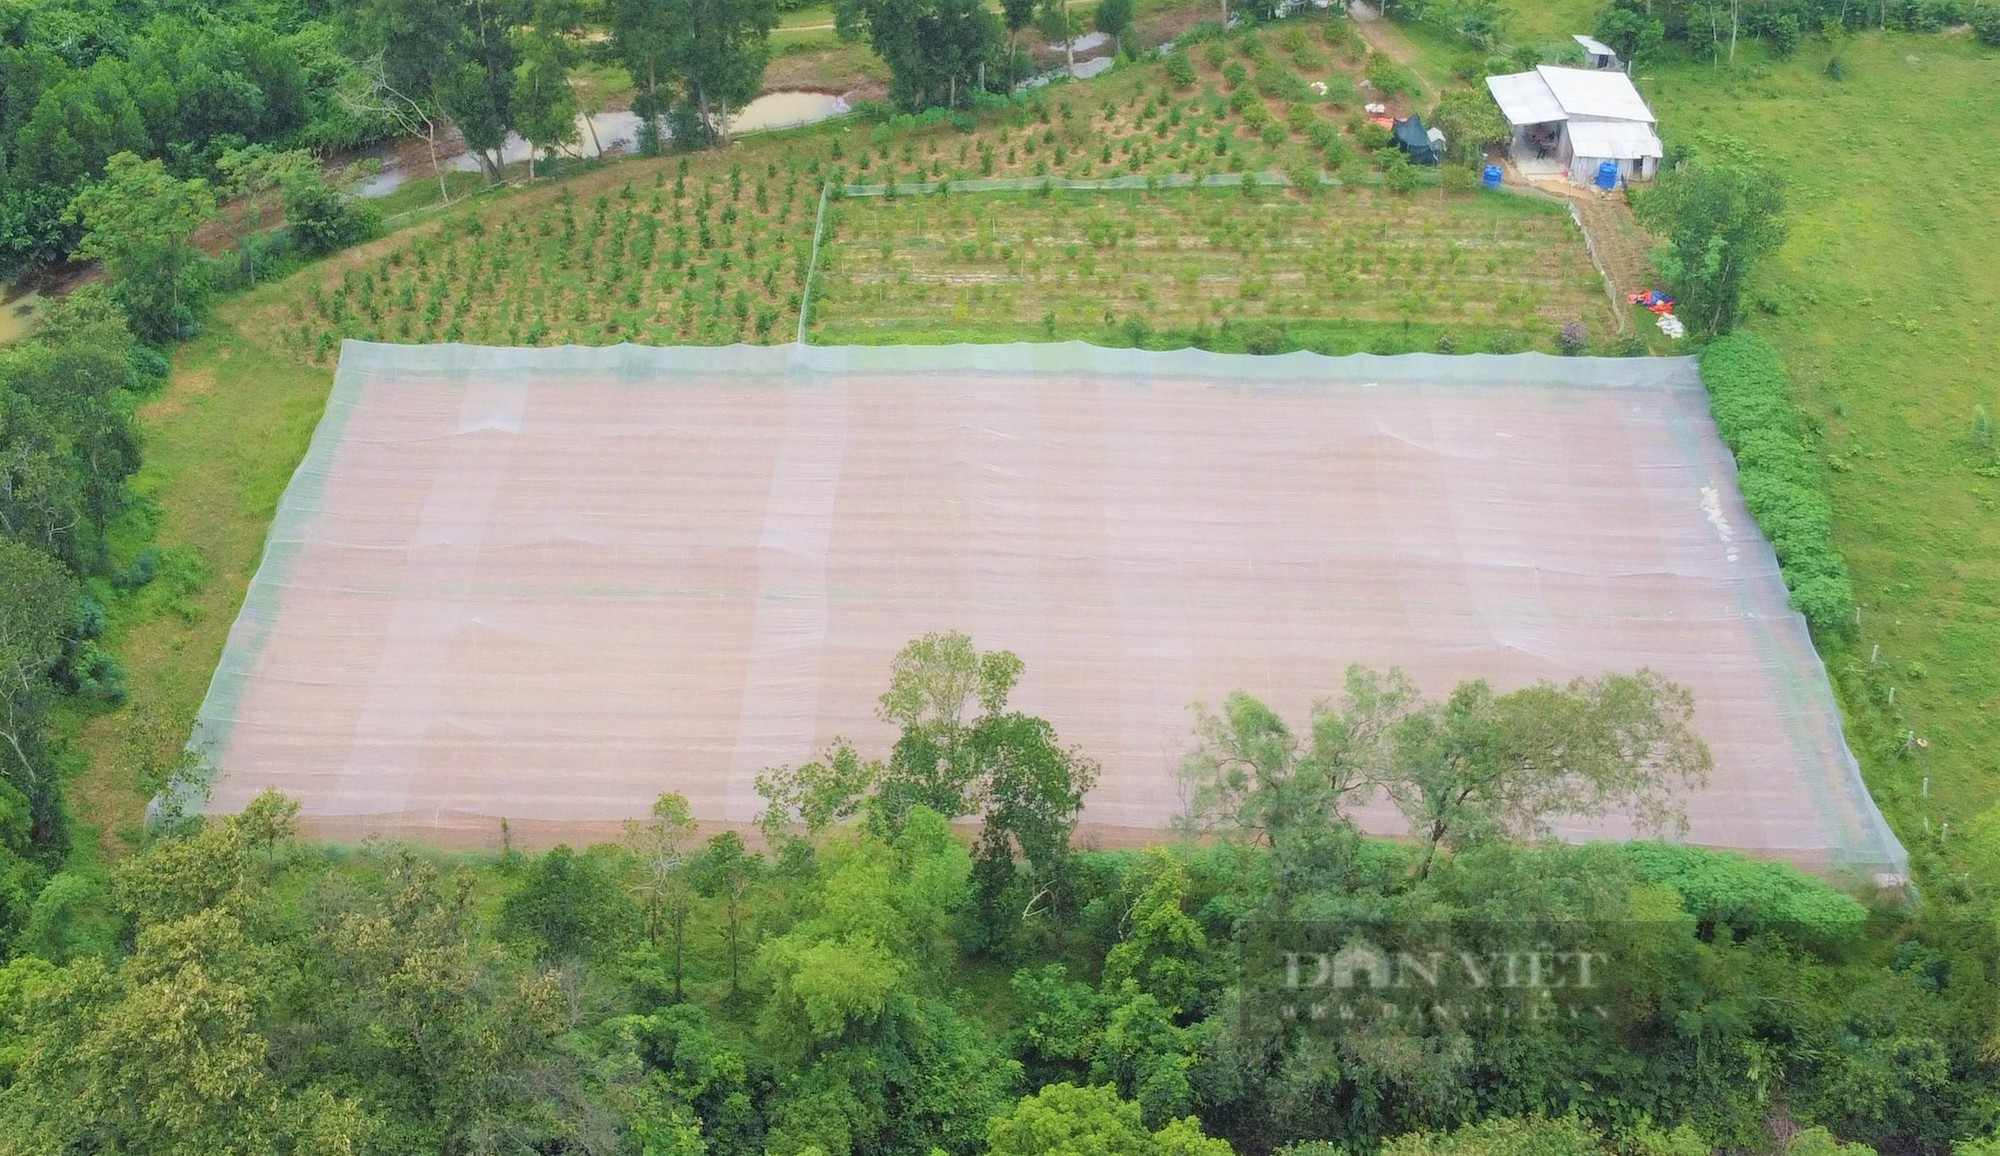 Nông dân Hà Tĩnh trồng giống ớt quả bé tí tẹo, giá bán lại đắt nhất thế giới, mỗi năm lãi hàng trăm triệu - Ảnh 3.